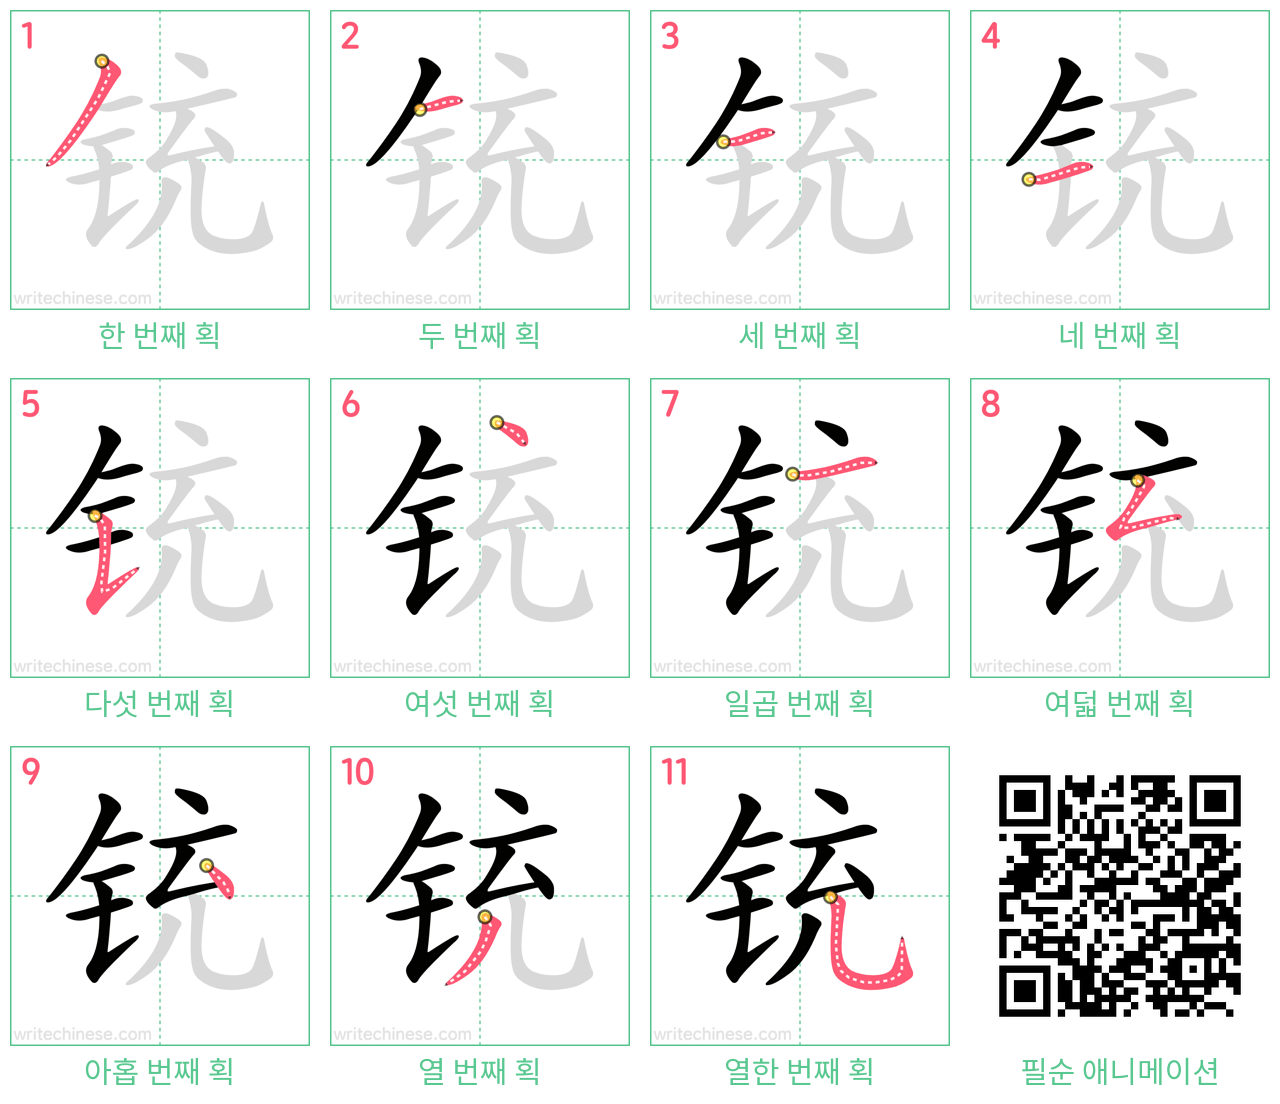 铳 step-by-step stroke order diagrams